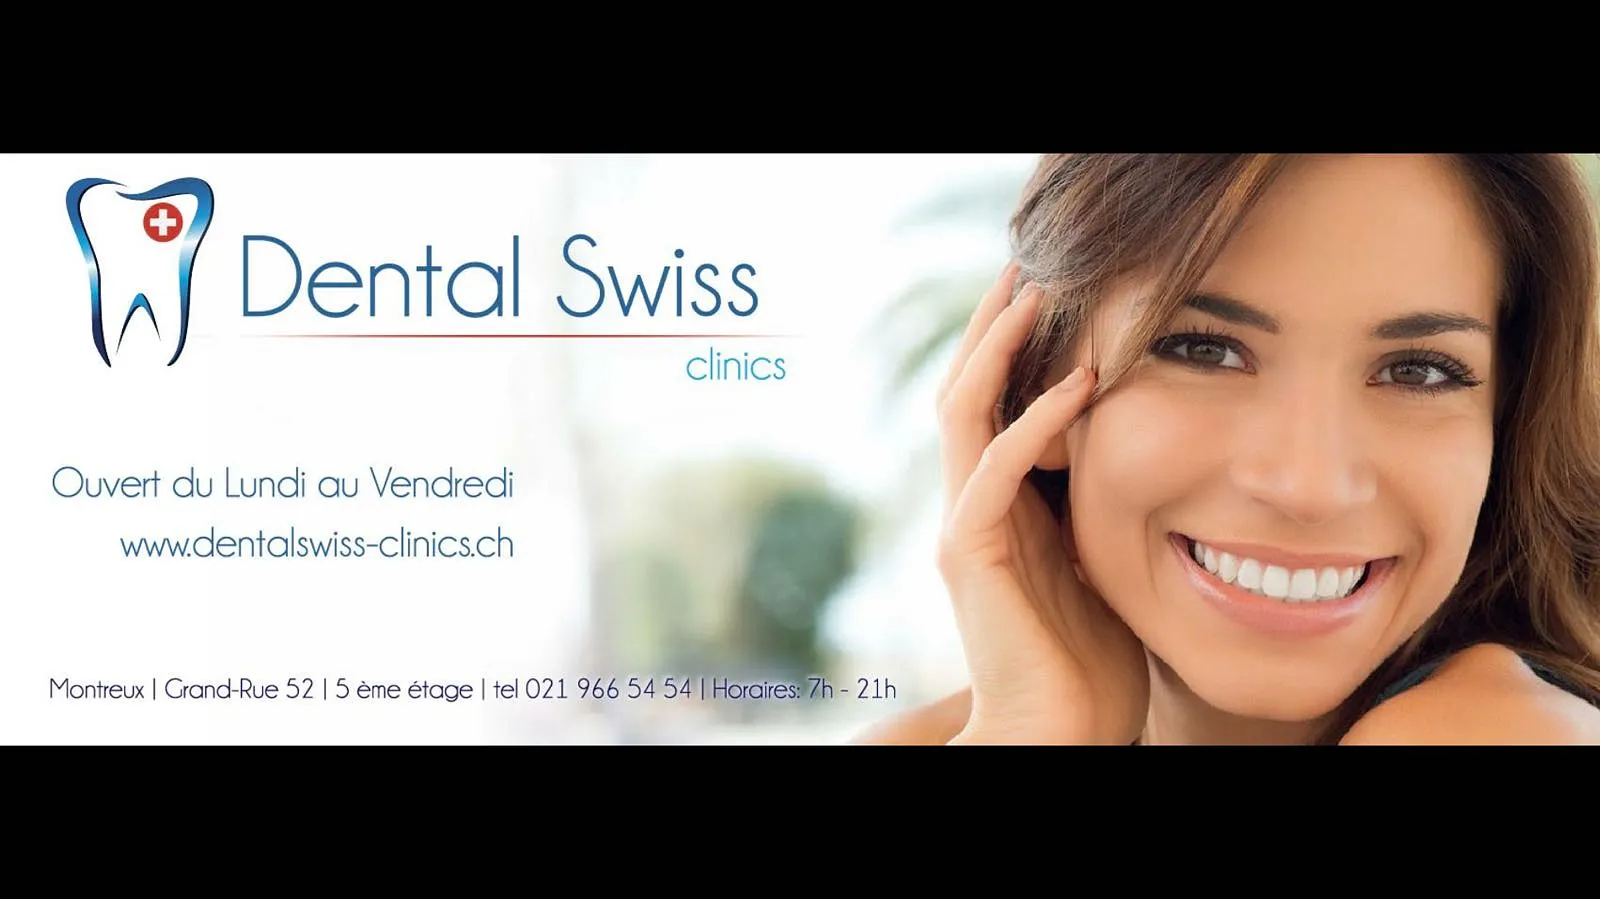 DENTAL SWISS CLINICS - Cabinet dentaire